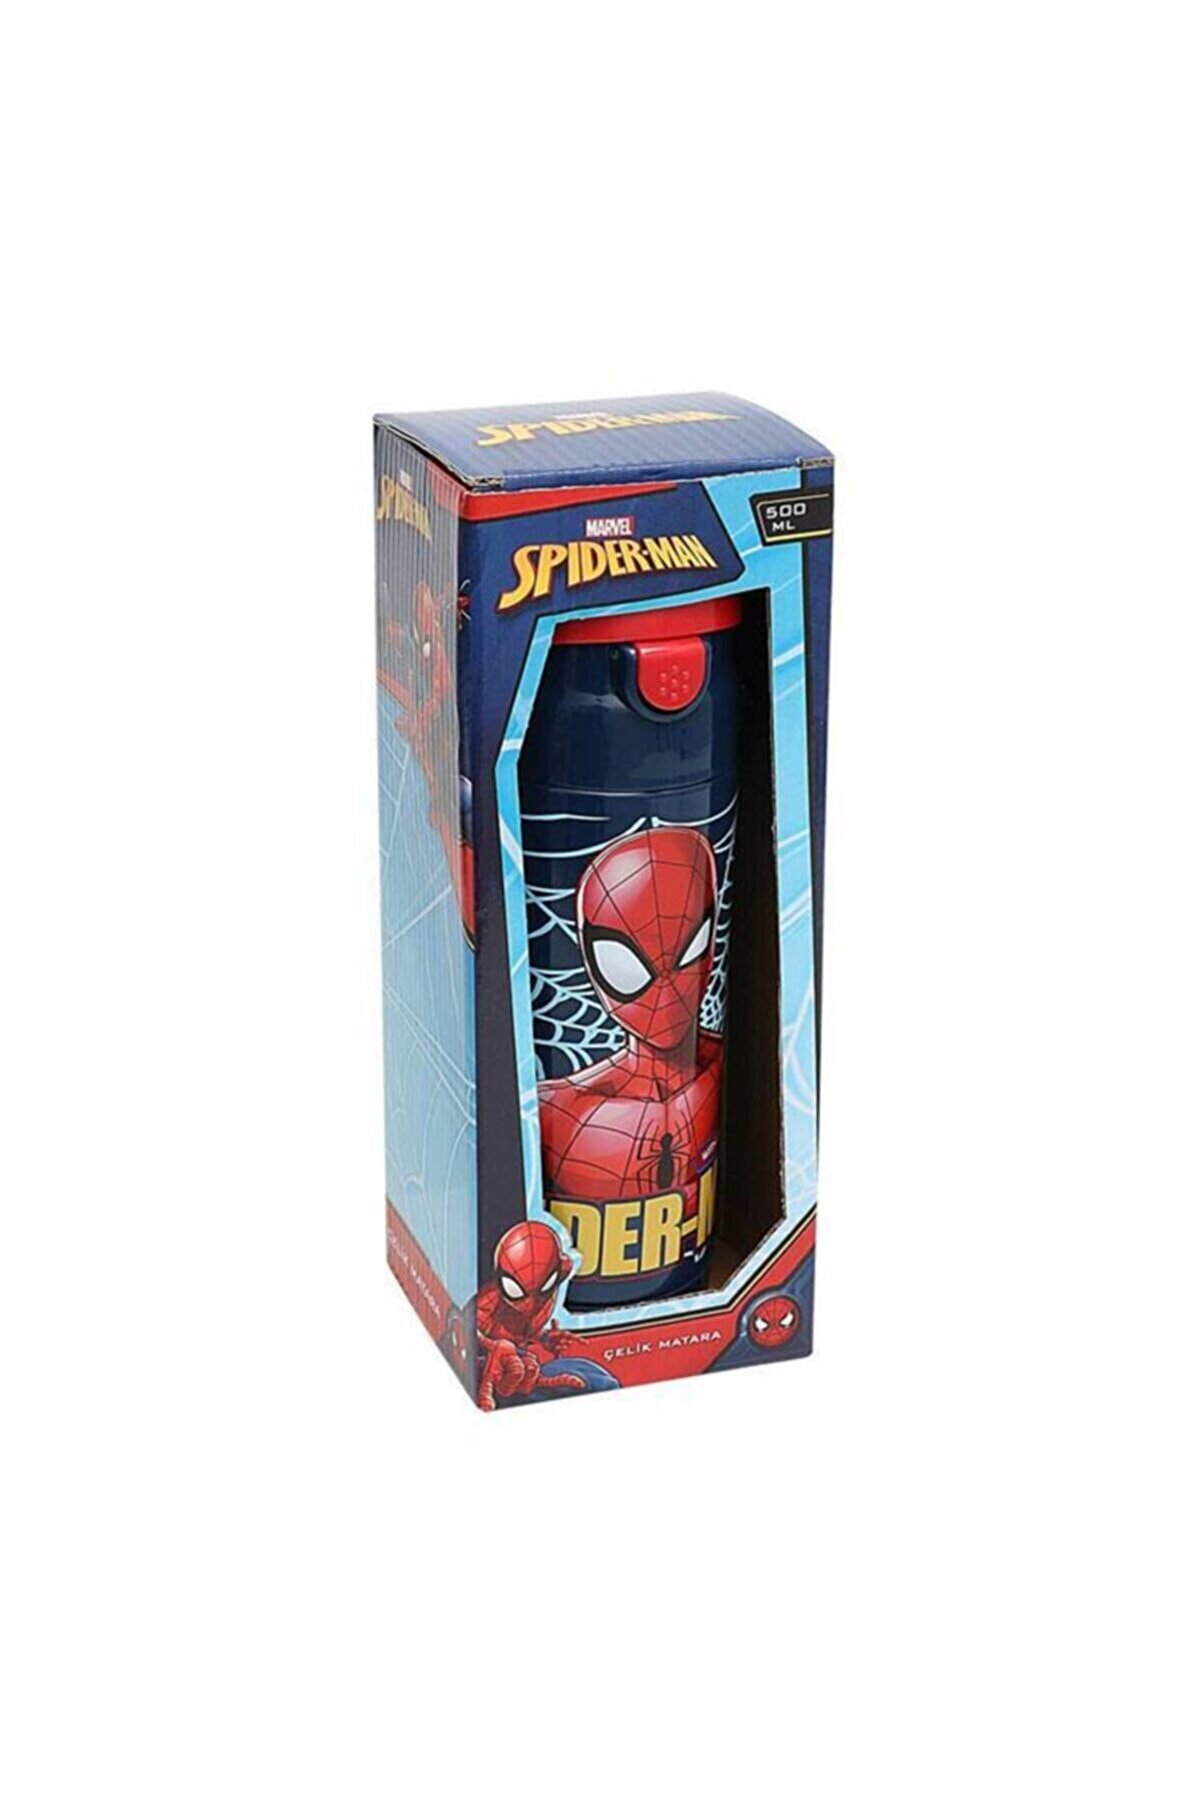 Spiderman 44037 Çelik Matara (suluk)